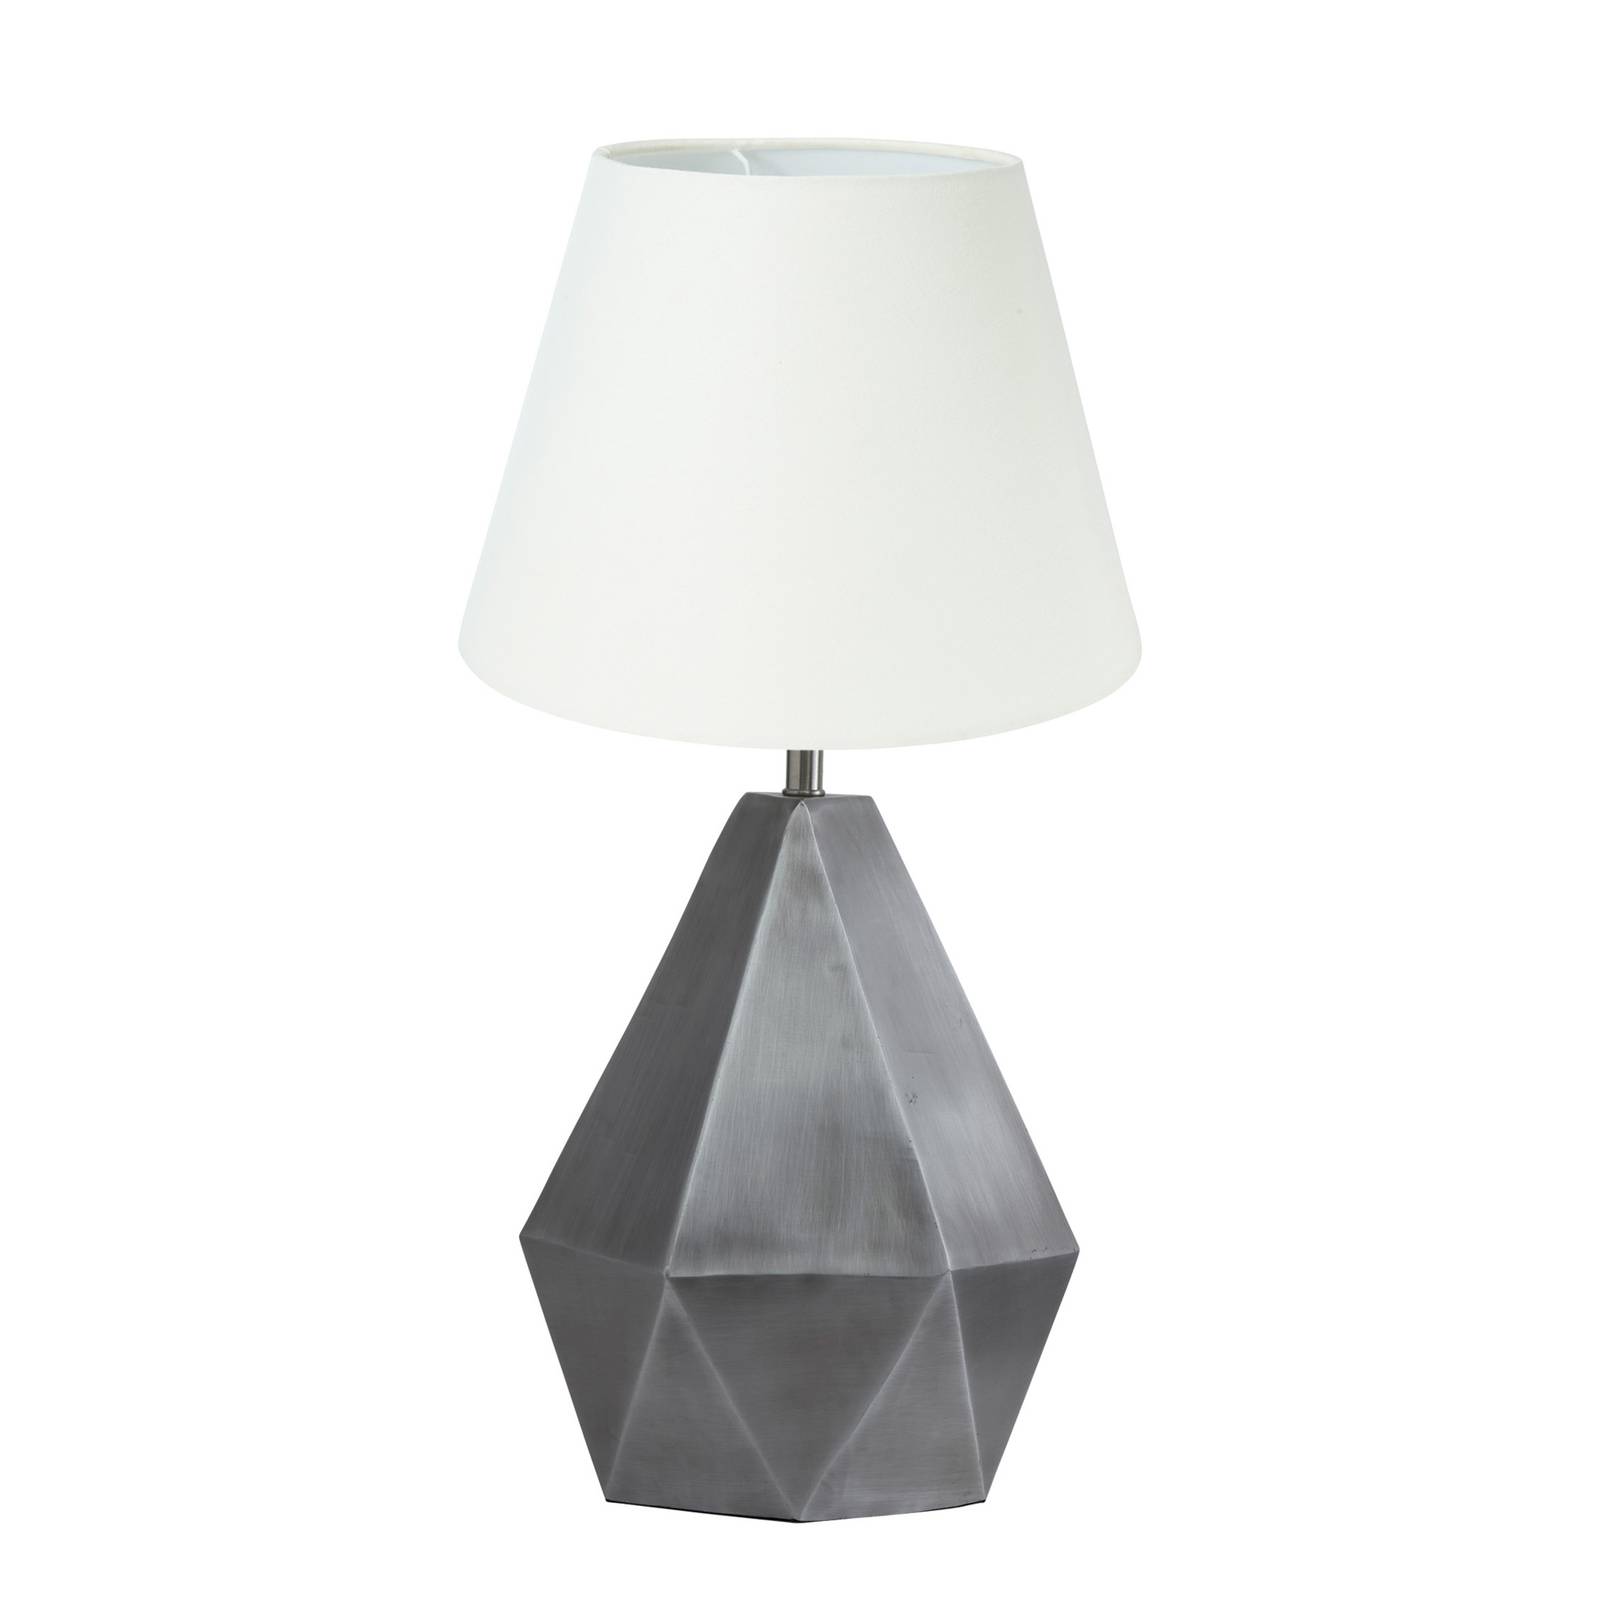 PR Home Trinity bordlampe Ø 25cm sølv/offwhite